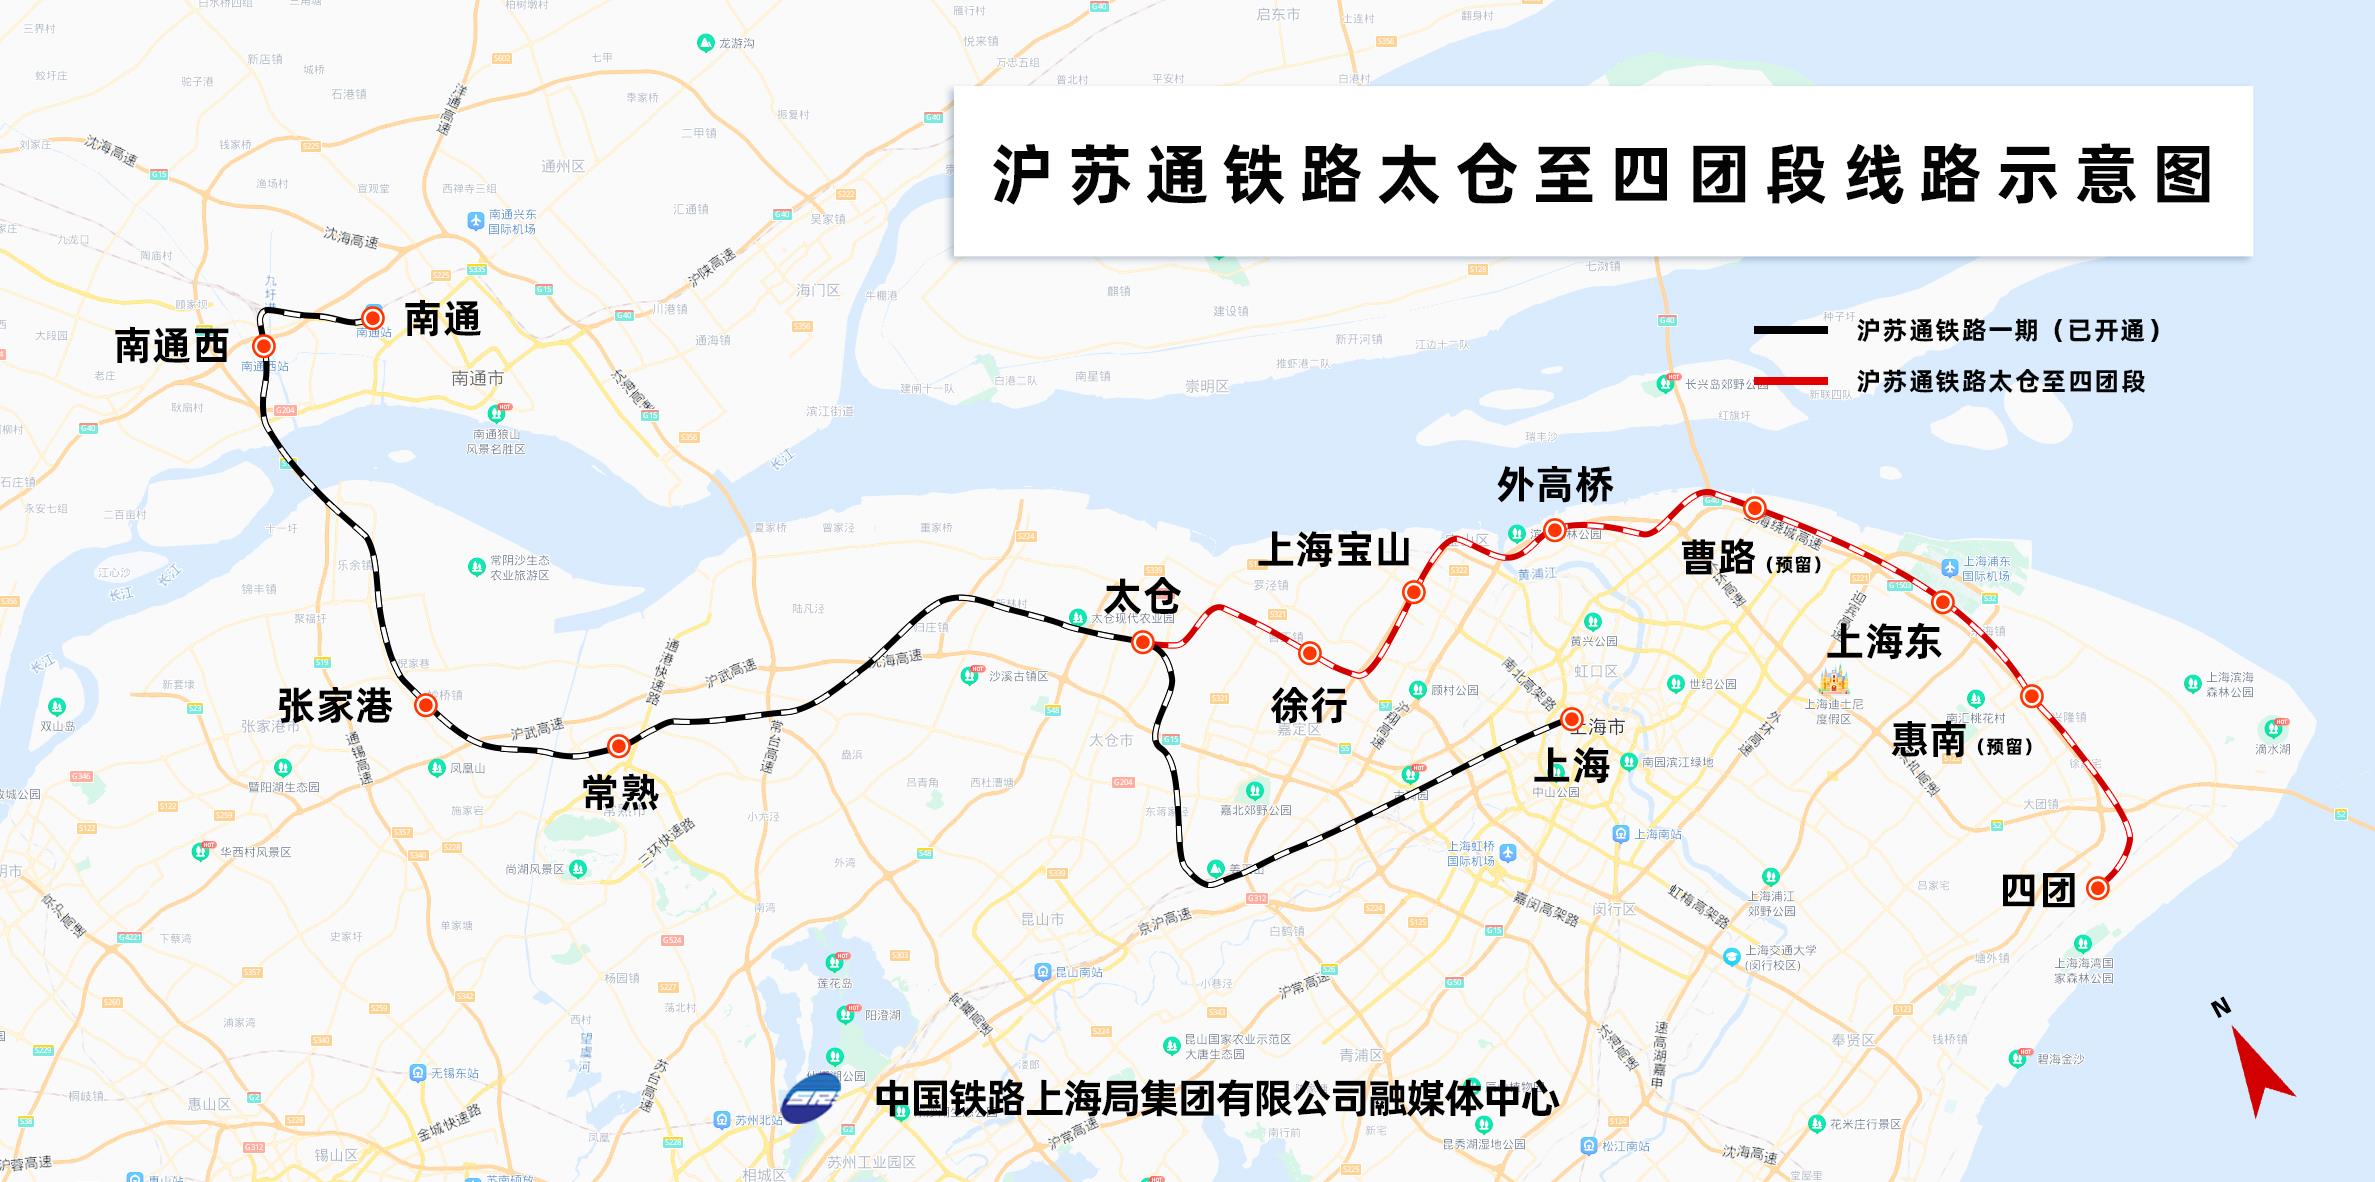 沪苏通铁路二期动车双线特大桥墩身完成浇筑